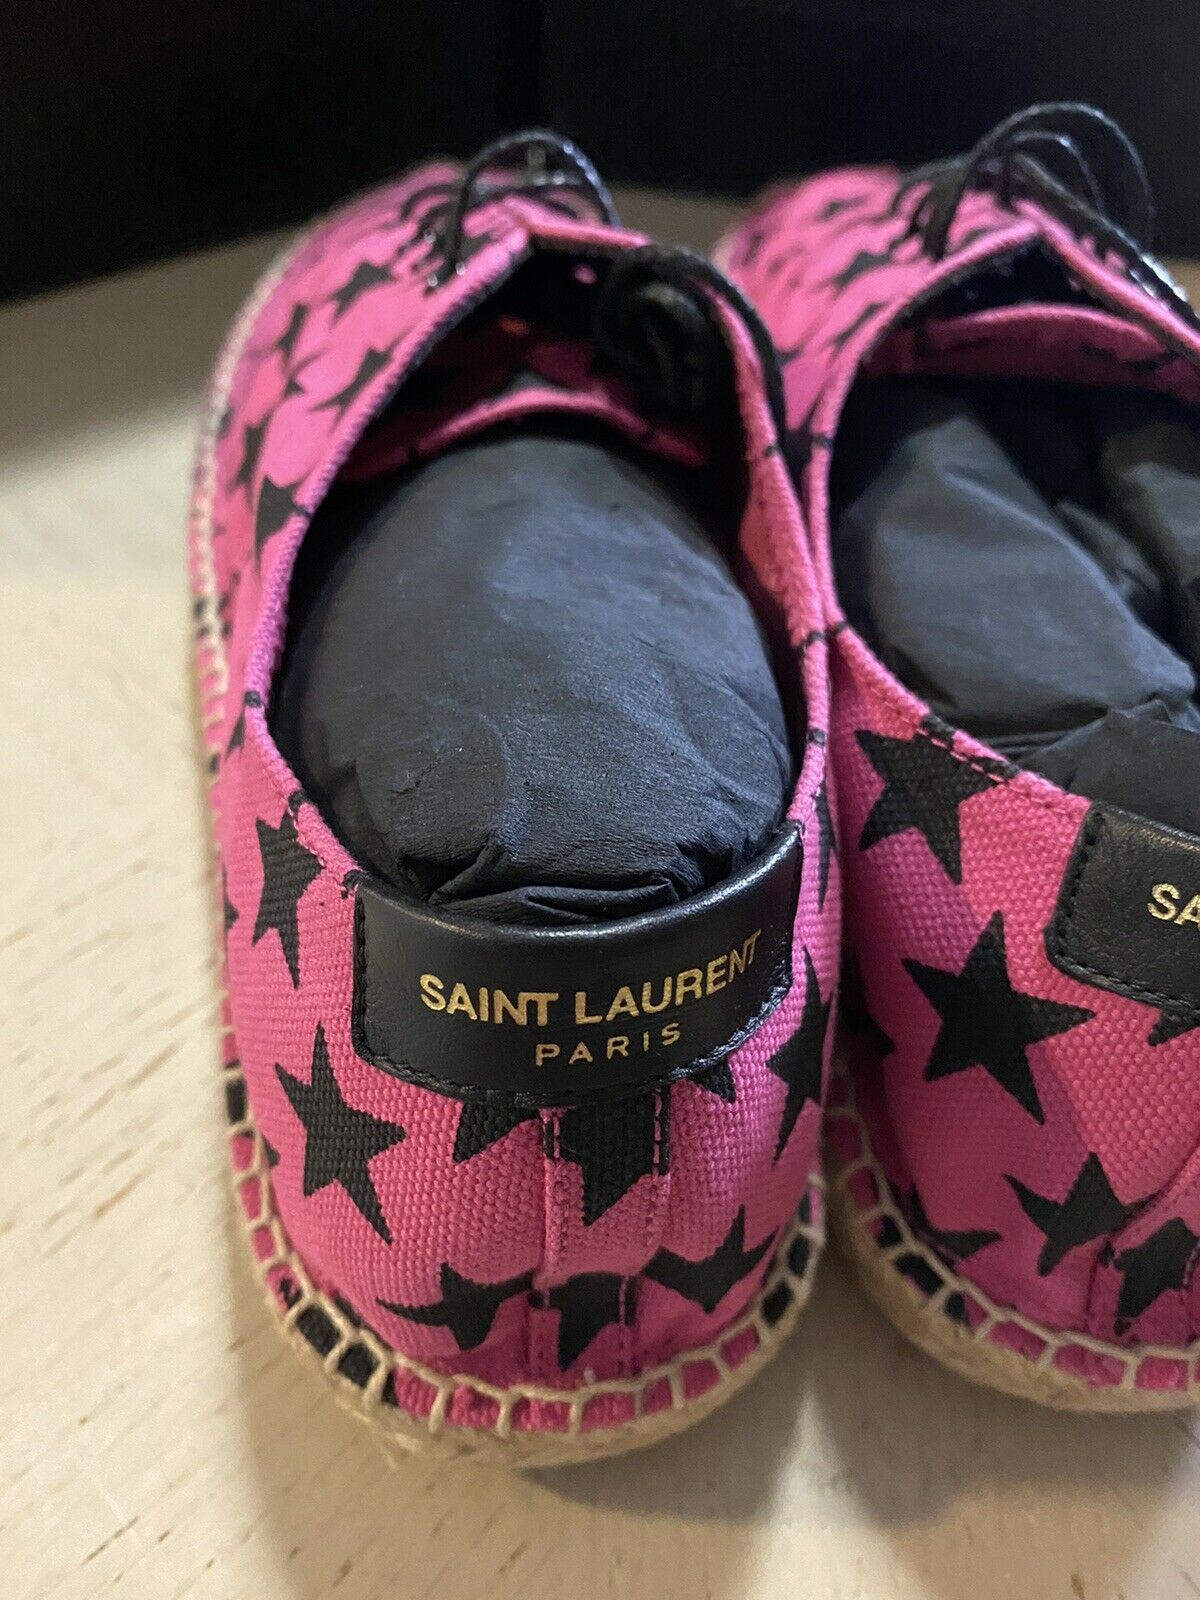 NIB Saint Laurent Damen Espadrille-Schuhe mit Sternenmuster, Rot/Schwarz, 7,5 US/37,5 Eu